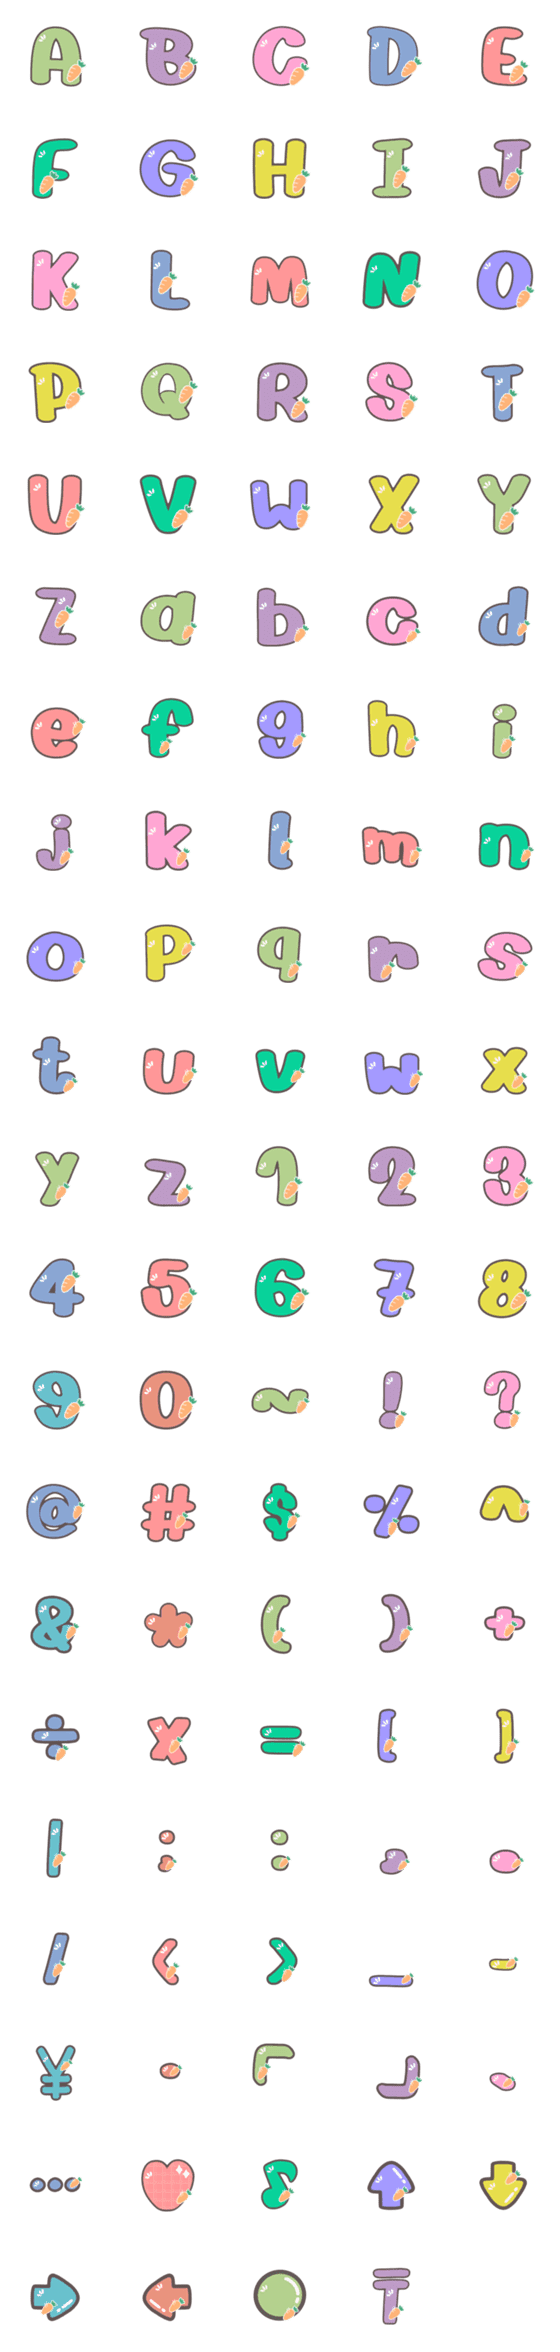 [LINE絵文字]ABC 123 Alphabet cute emoji V.2の画像一覧